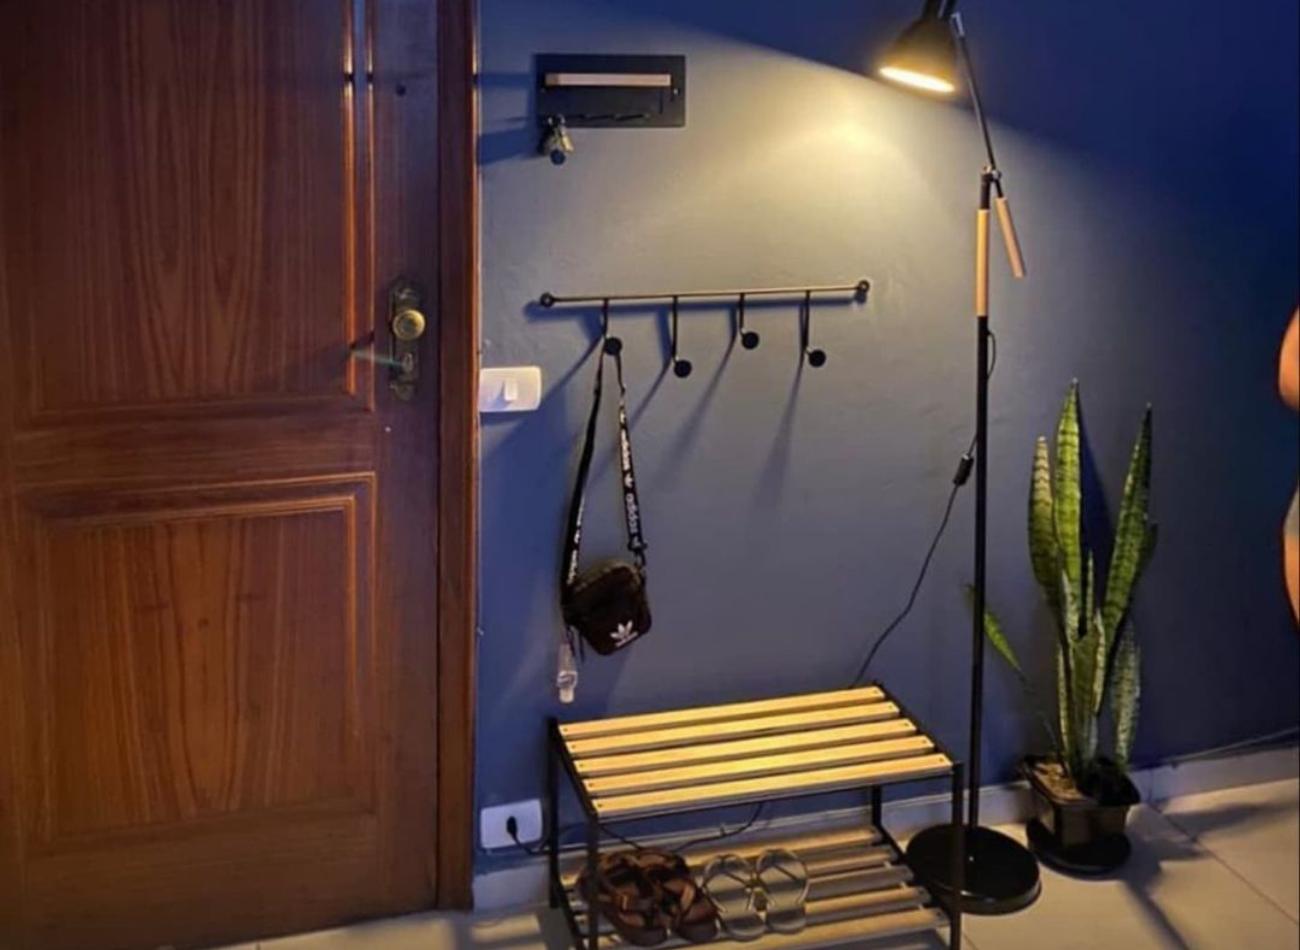 Descubra como você pode ter um hall mesmo com um espaço pequeno na casa/ Imagem reproduzida de Instagram